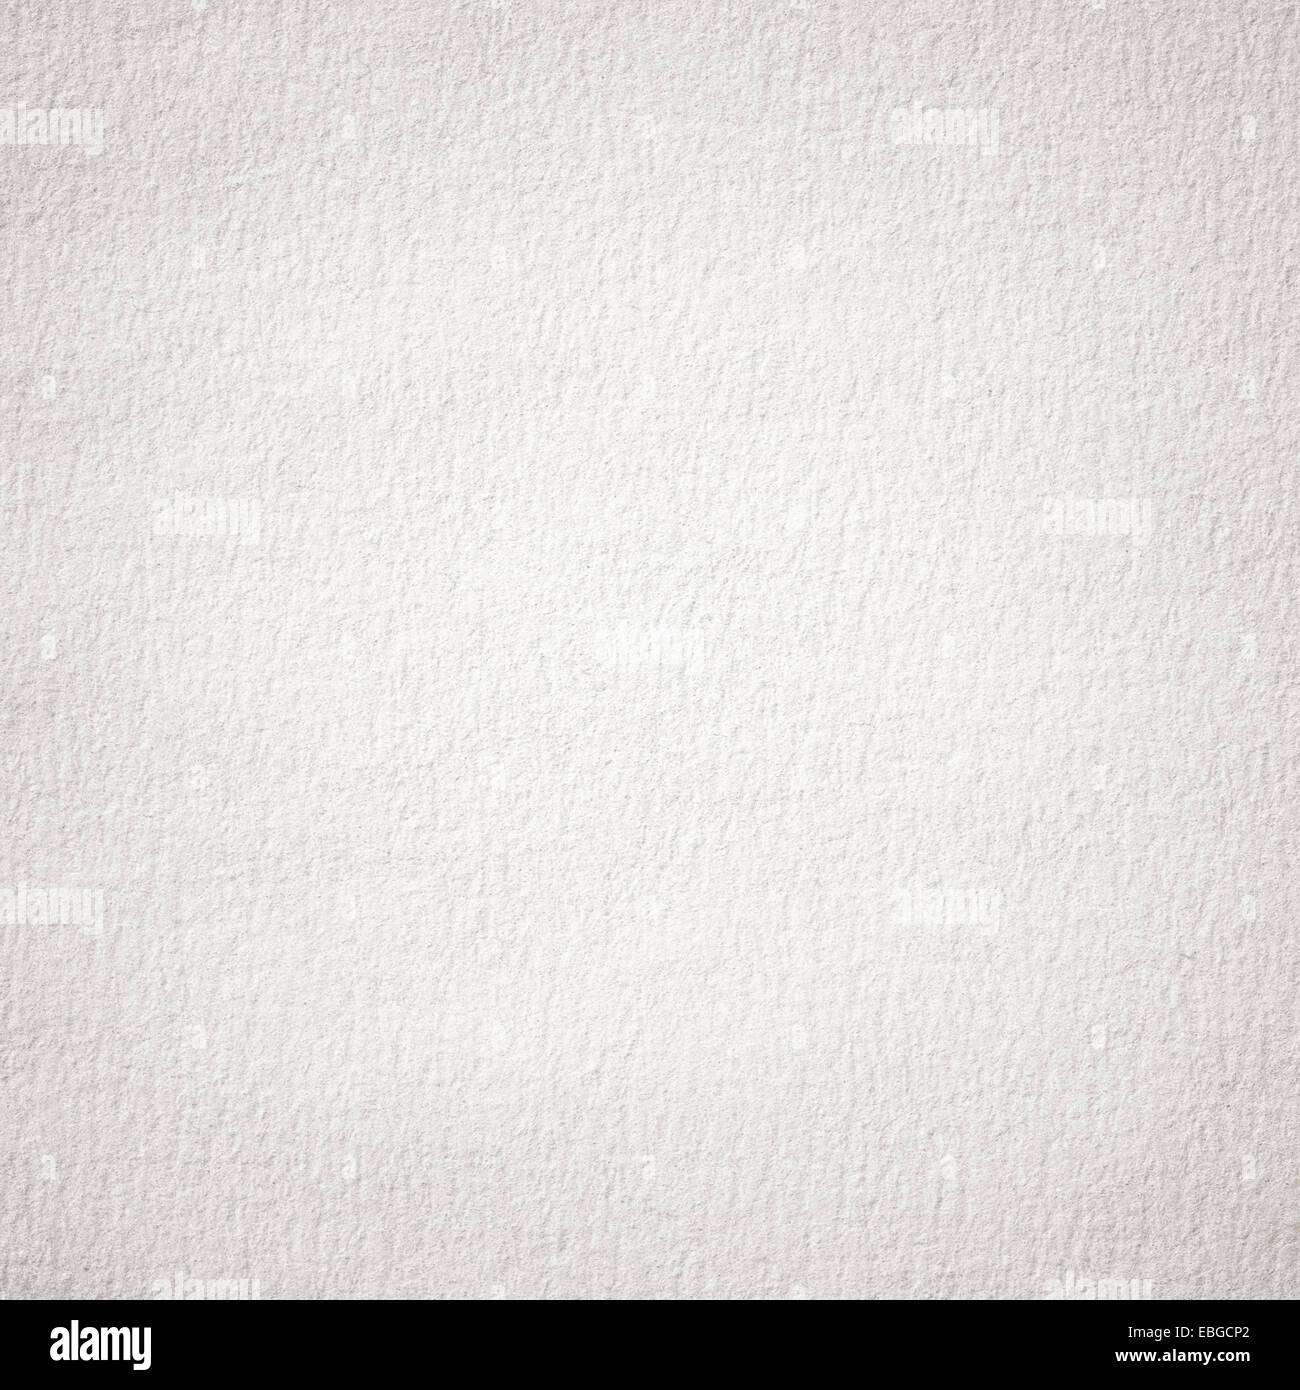 Grey grainy paper texture Stock Photo - Alamy